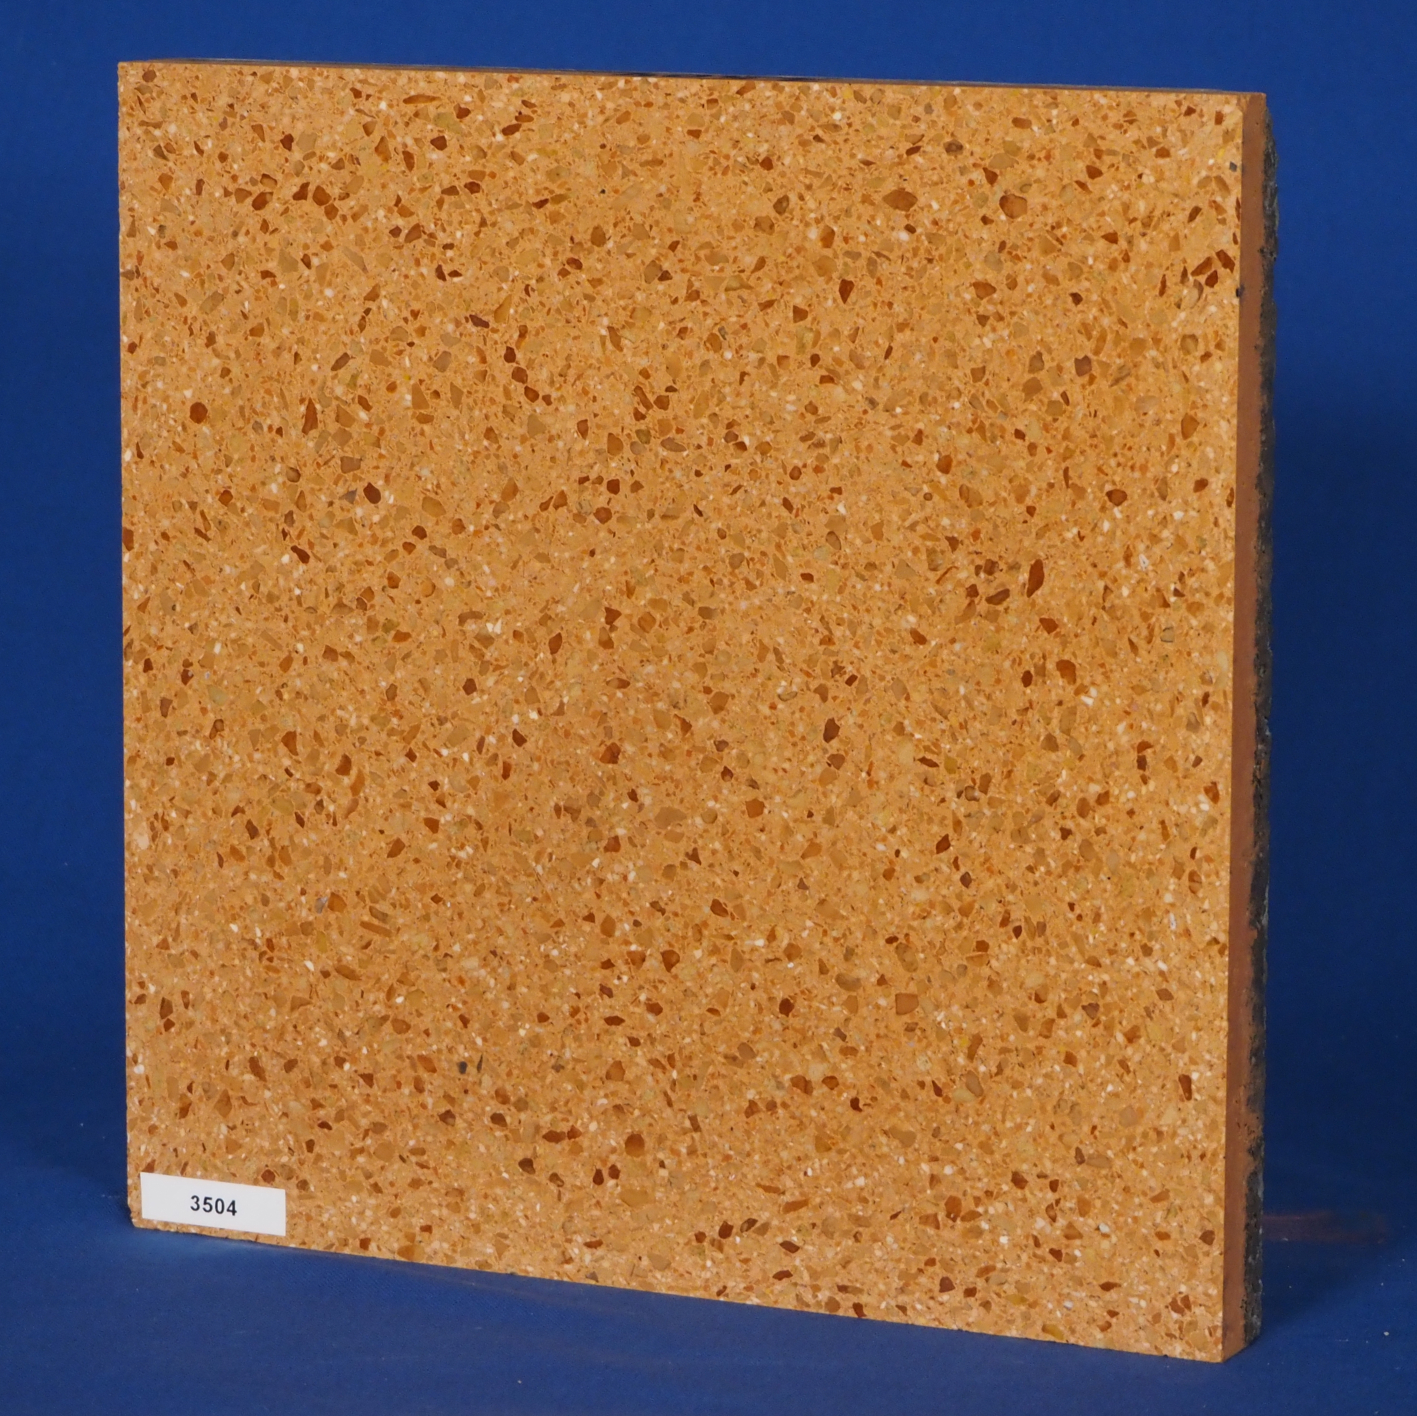 Terrazzo 'Tronco' floor tiles (30 x 30 cm) - Sold per pallet